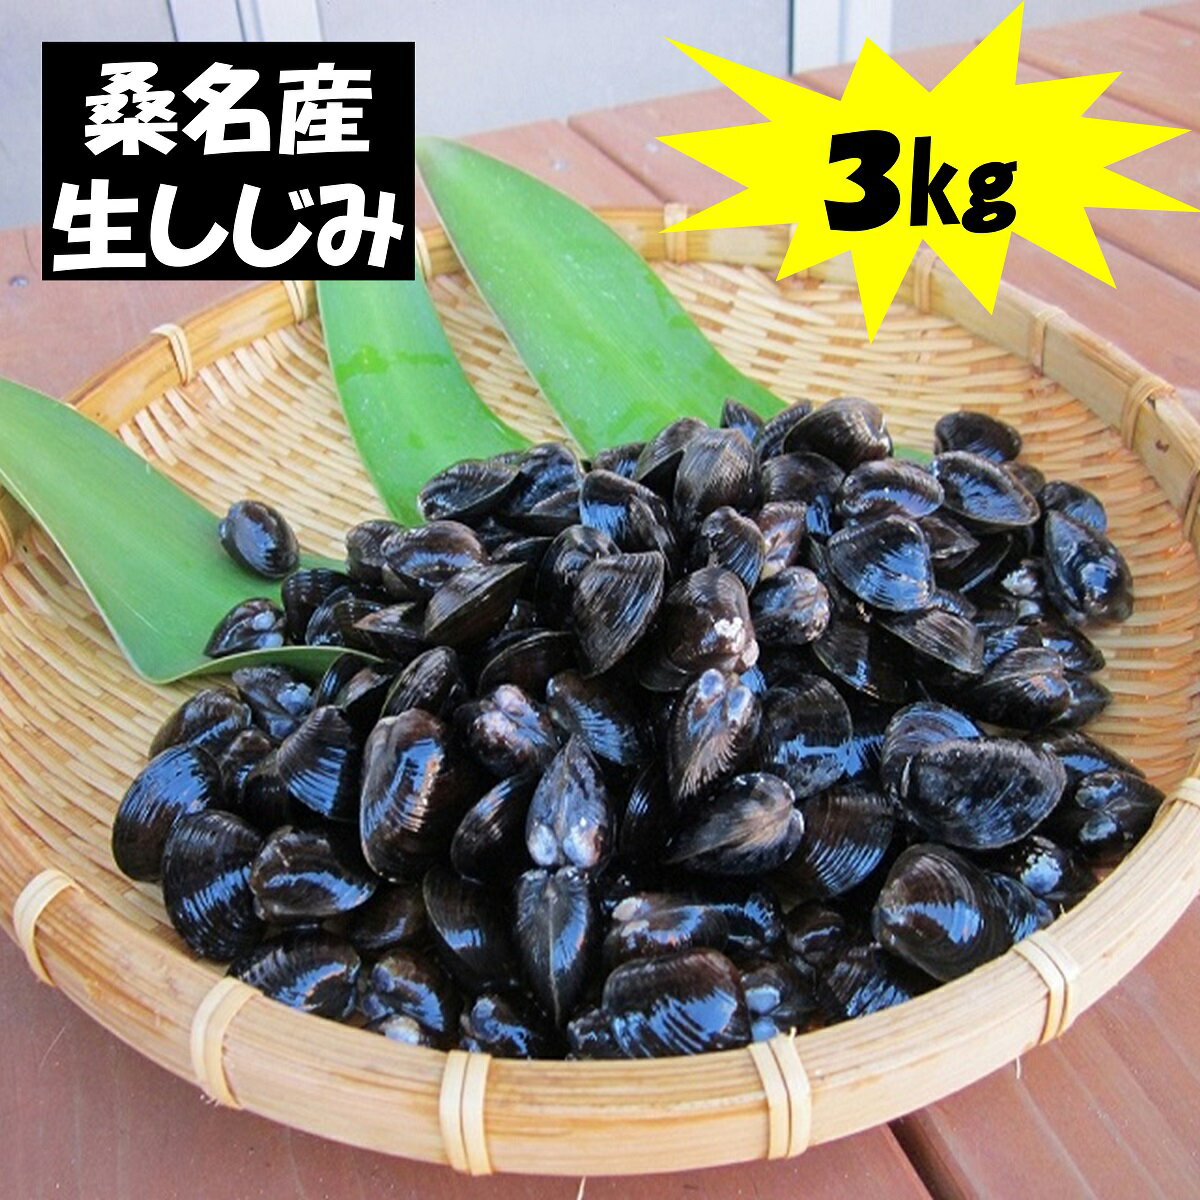 丸元水産 桑名産蜆(シジミ)3kg